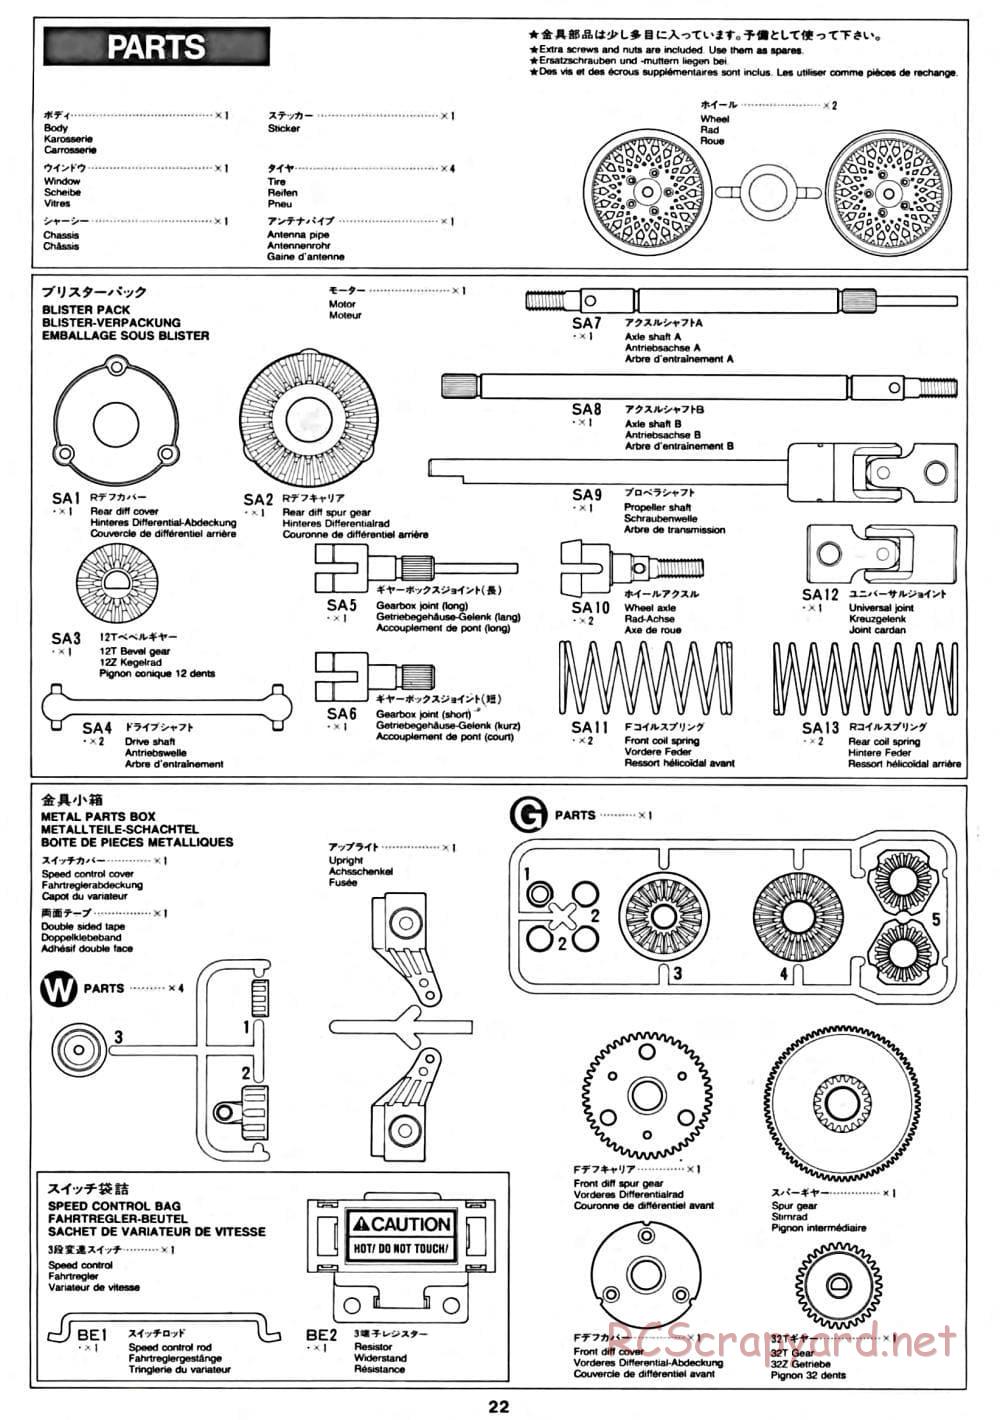 Tamiya - CC-01 Chassis - Manual - Page 22